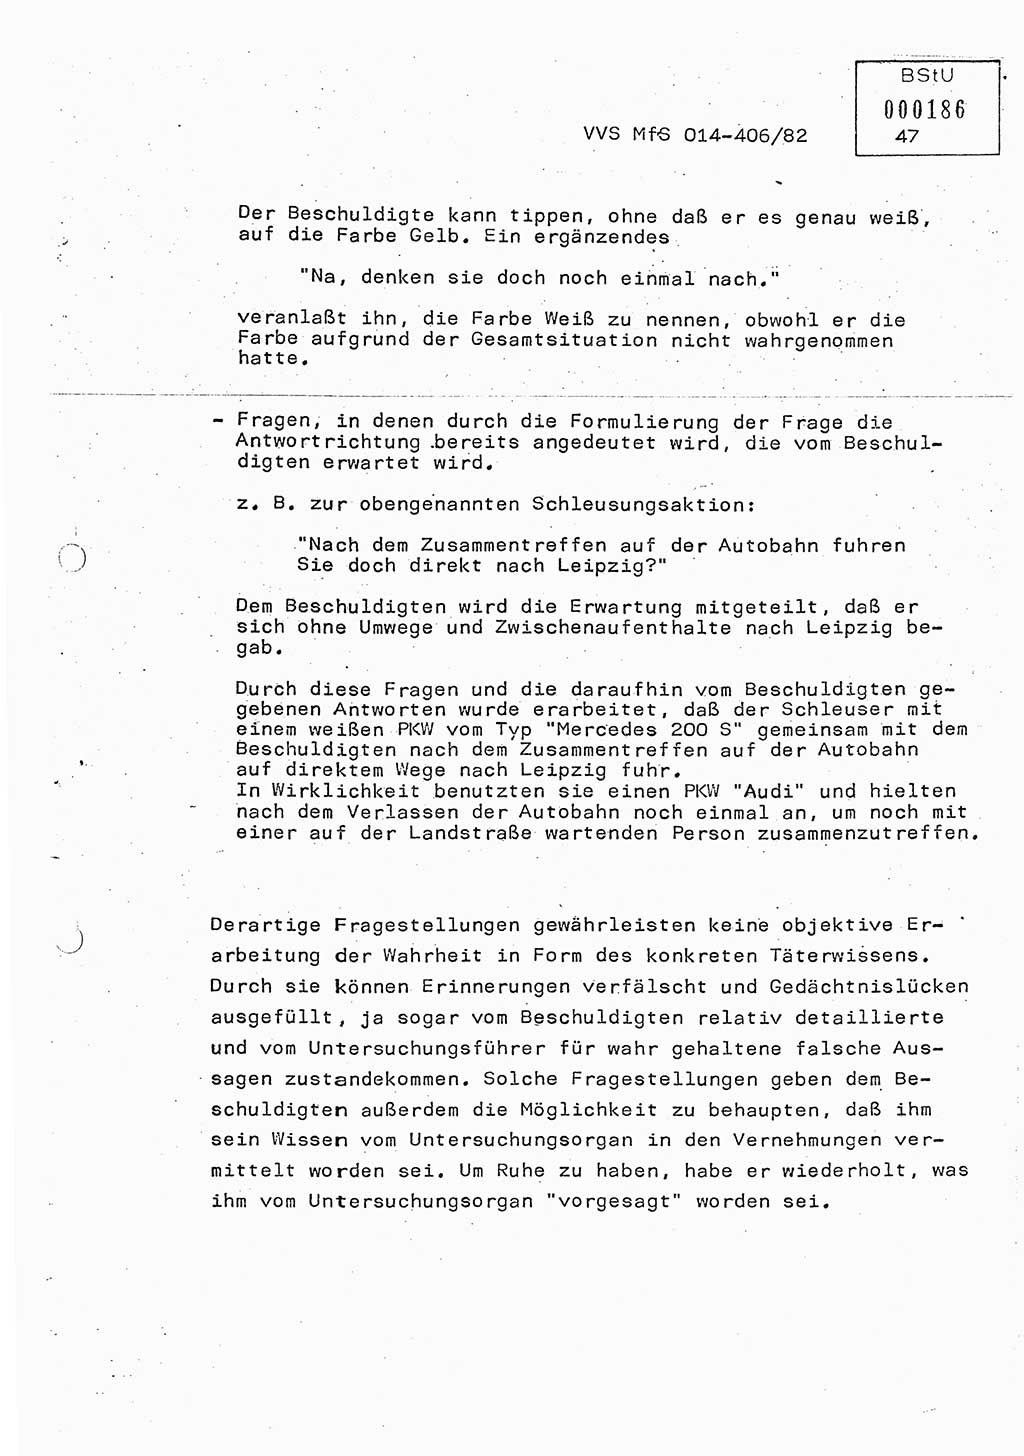 Lektion Ministerium für Staatssicherheit (MfS) [Deutsche Demokratische Republik (DDR)], Hauptabteilung (HA) Ⅸ, Vertrauliche Verschlußsache (VVS) o014-406/82, Berlin 1982, Seite 47 (Lekt. MfS DDR HA Ⅸ VVS o014-406/82 1982, S. 47)